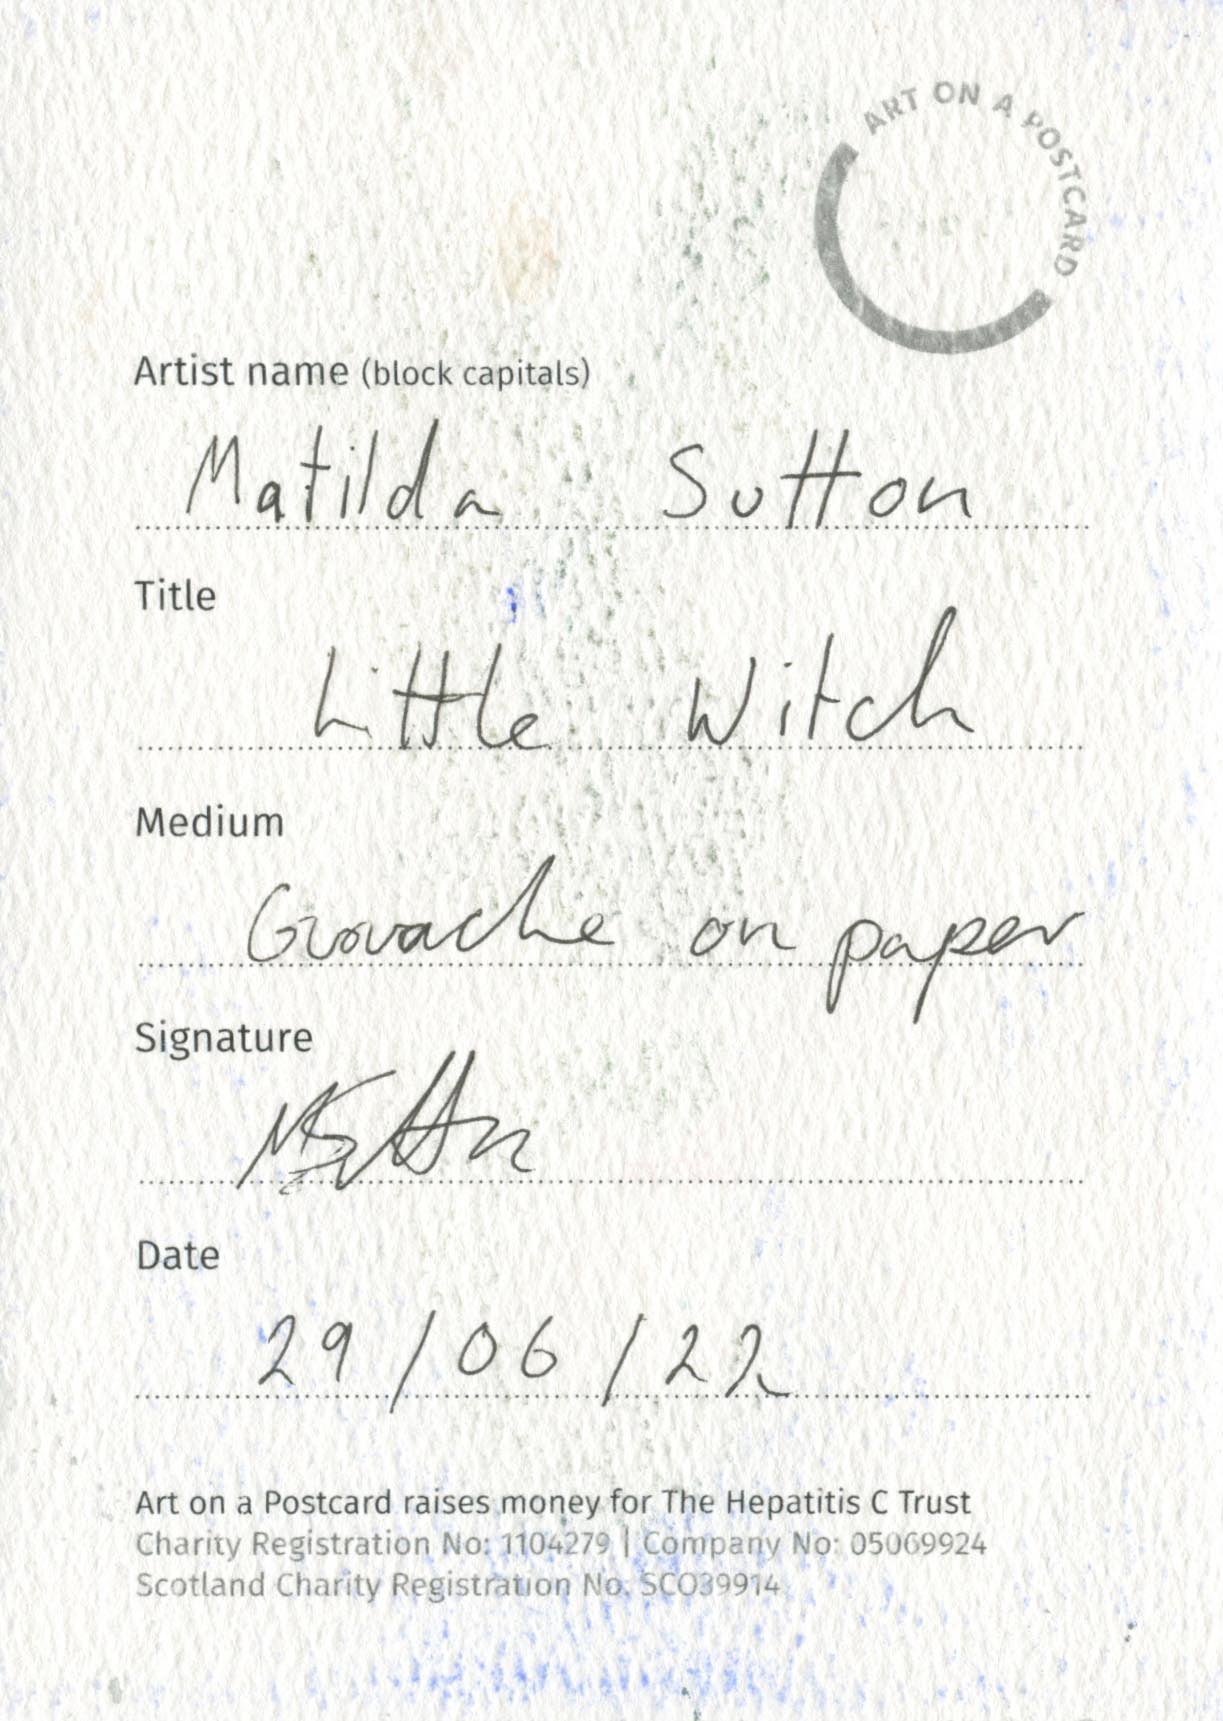 22. Matilda Sutton - Little Witch - BACK